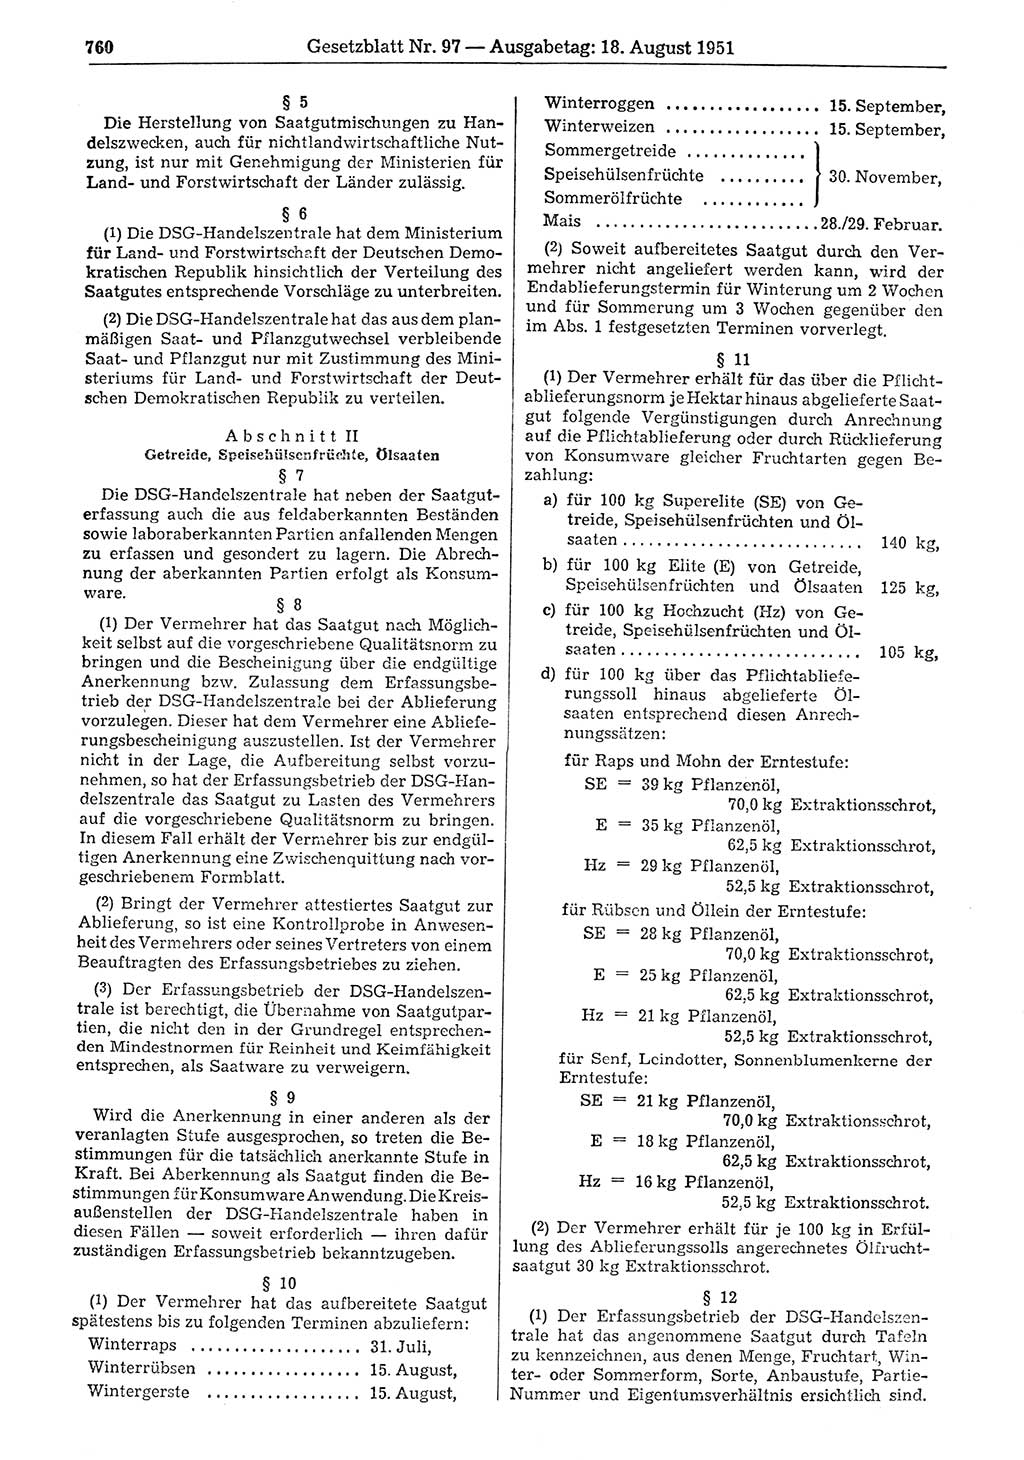 Gesetzblatt (GBl.) der Deutschen Demokratischen Republik (DDR) 1951, Seite 760 (GBl. DDR 1951, S. 760)